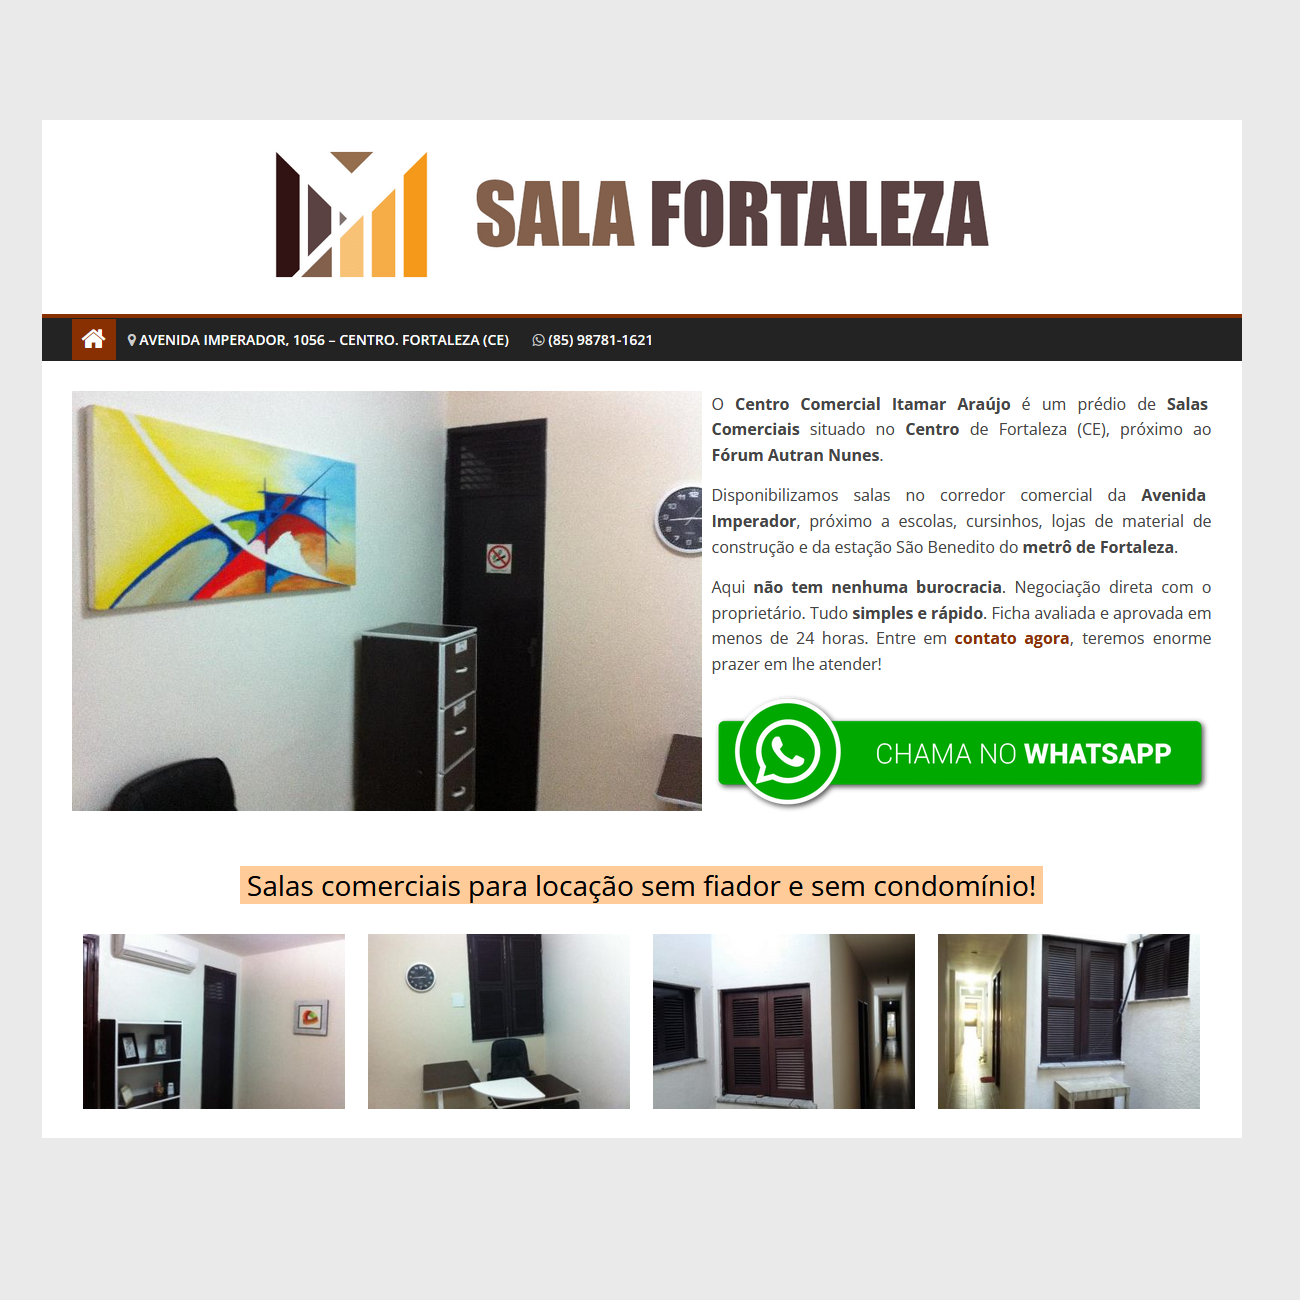 Sala Fortaleza